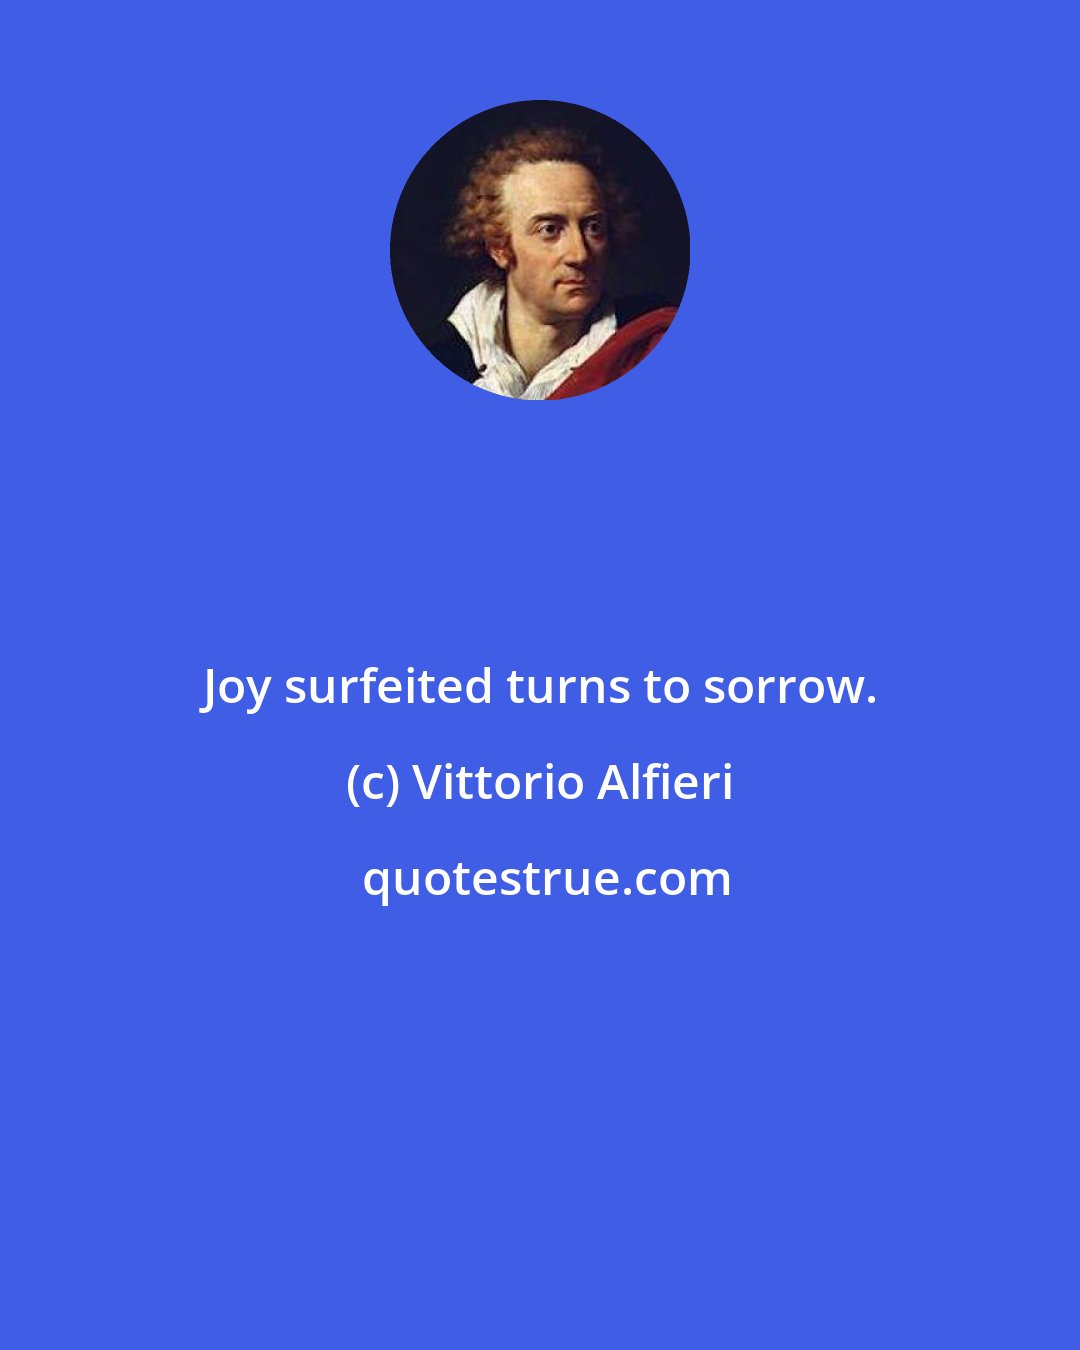 Vittorio Alfieri: Joy surfeited turns to sorrow.